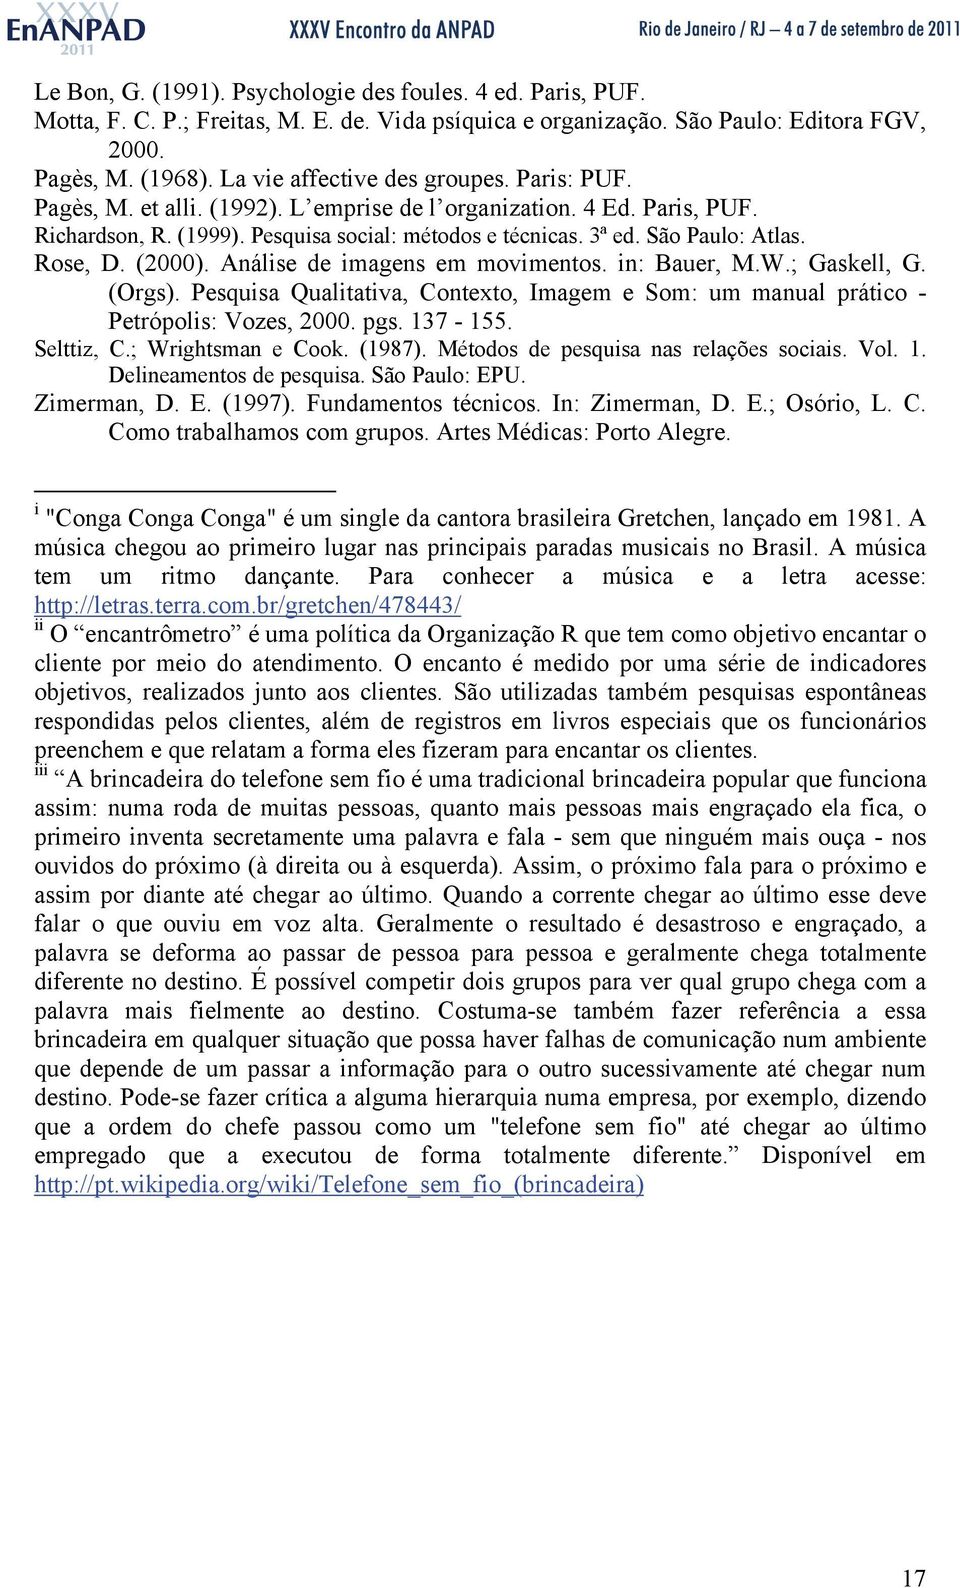 Rose, D. (2000). Análise de imagens em movimentos. in: Bauer, M.W.; Gaskell, G. (Orgs). Pesquisa Qualitativa, Contexto, Imagem e Som: um manual prático - Petrópolis: Vozes, 2000. pgs. 137-155.